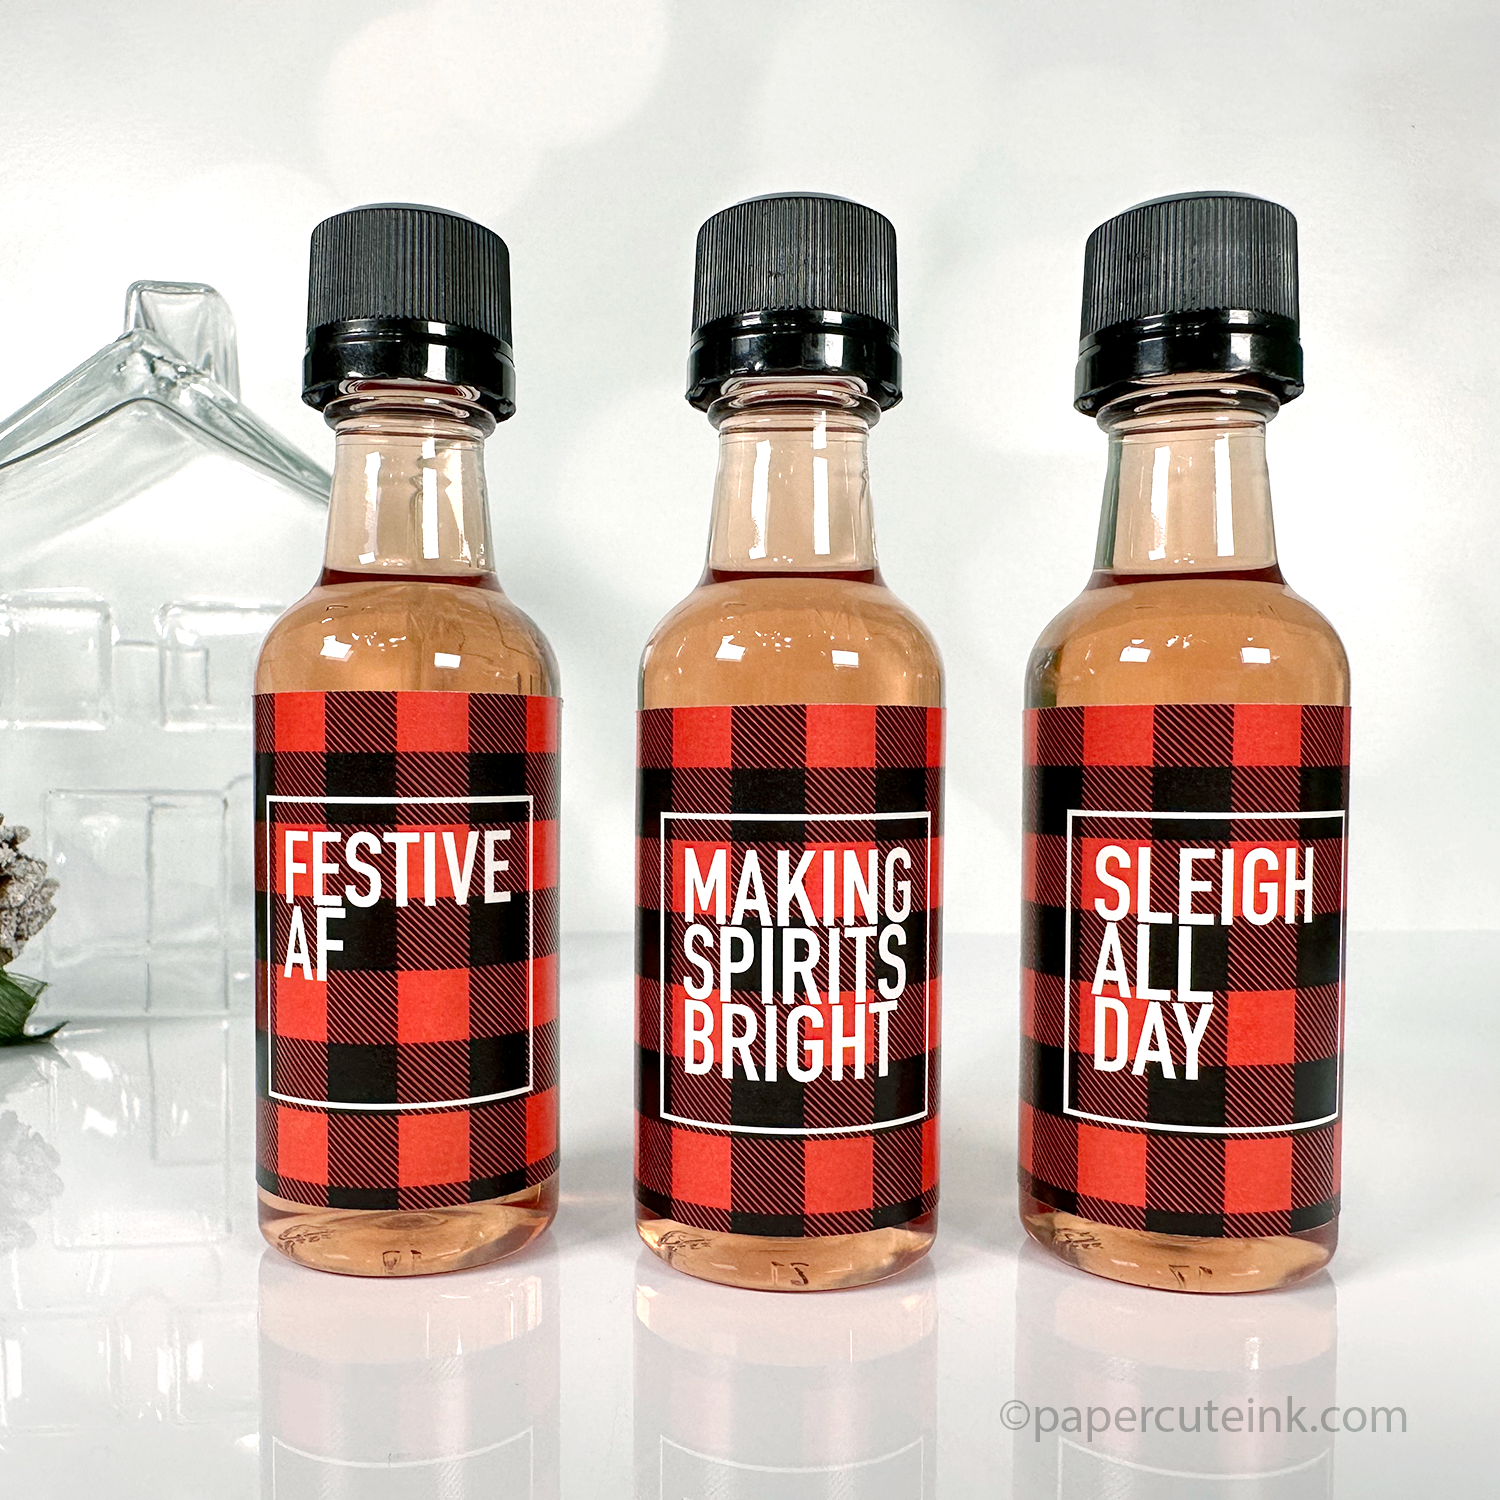 Festive AF red and black plaid holiday liquor bottle labels